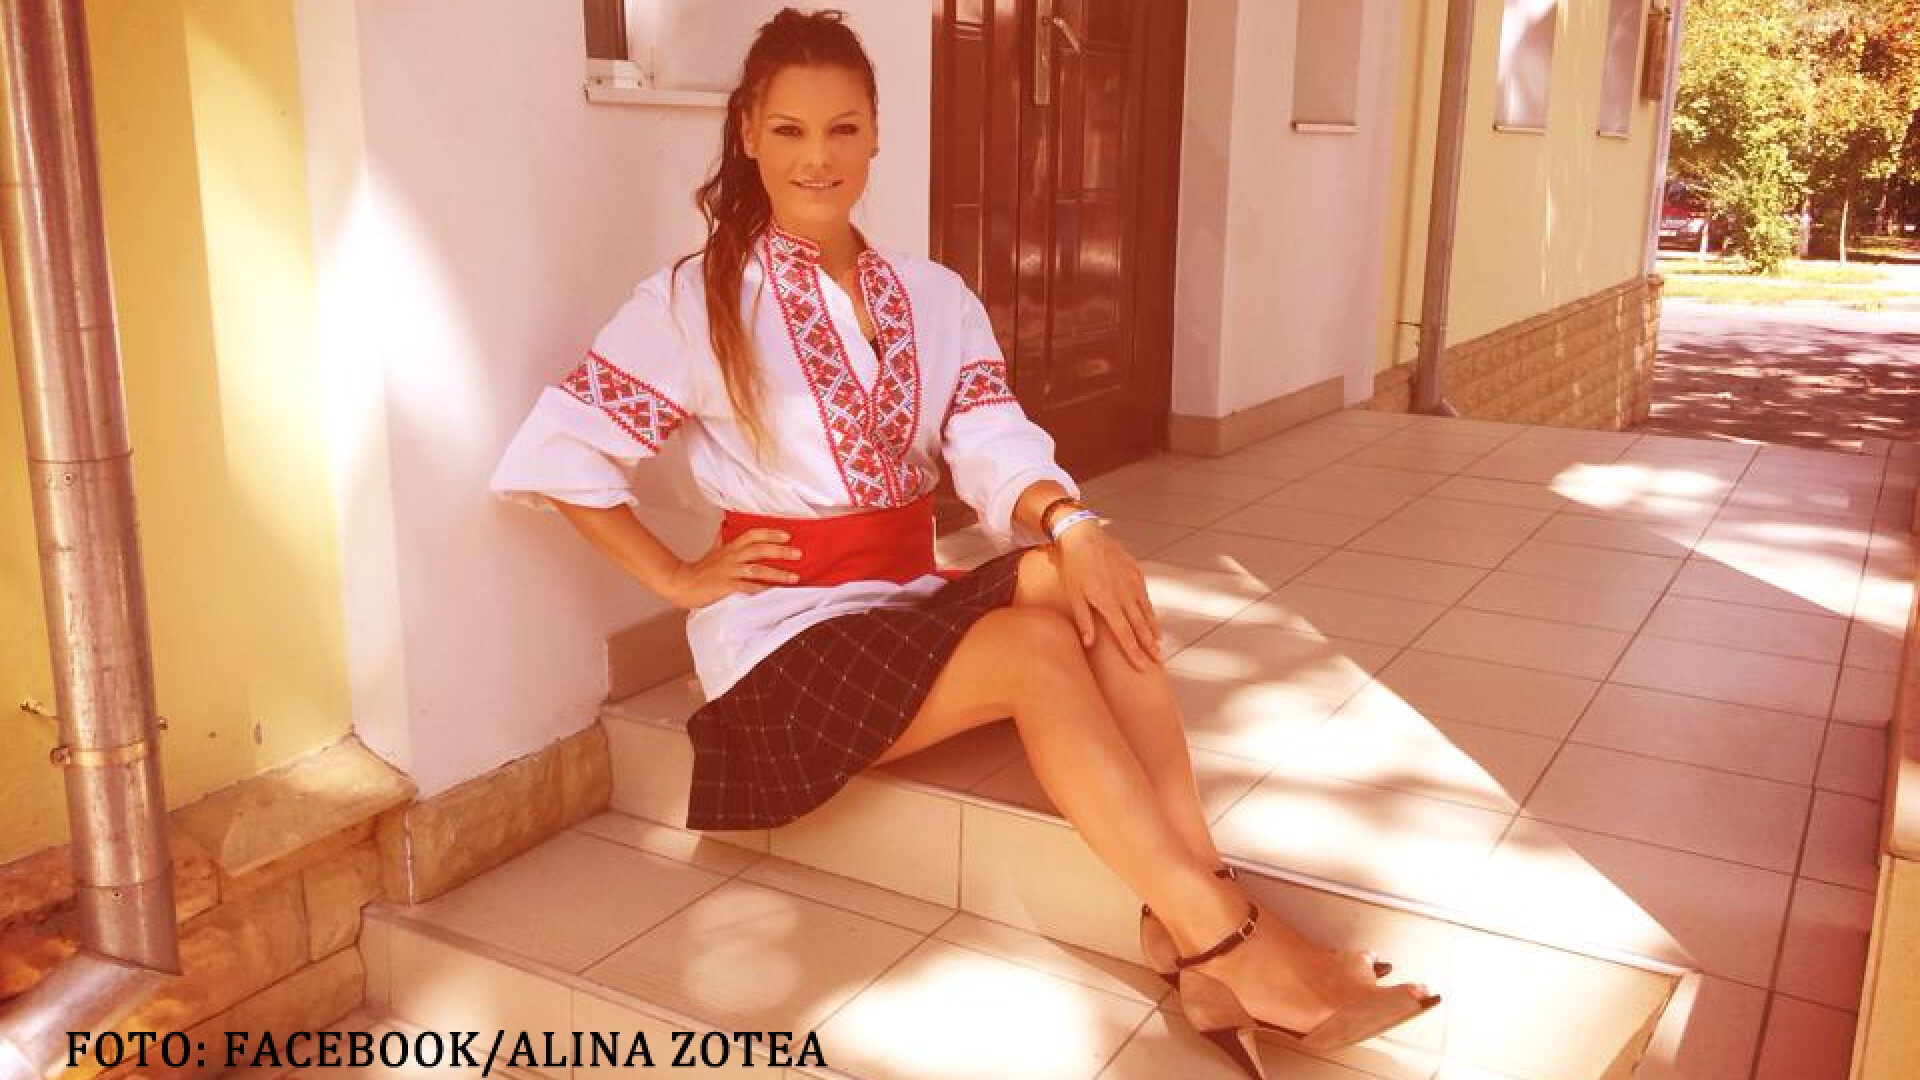 Alina Zotea